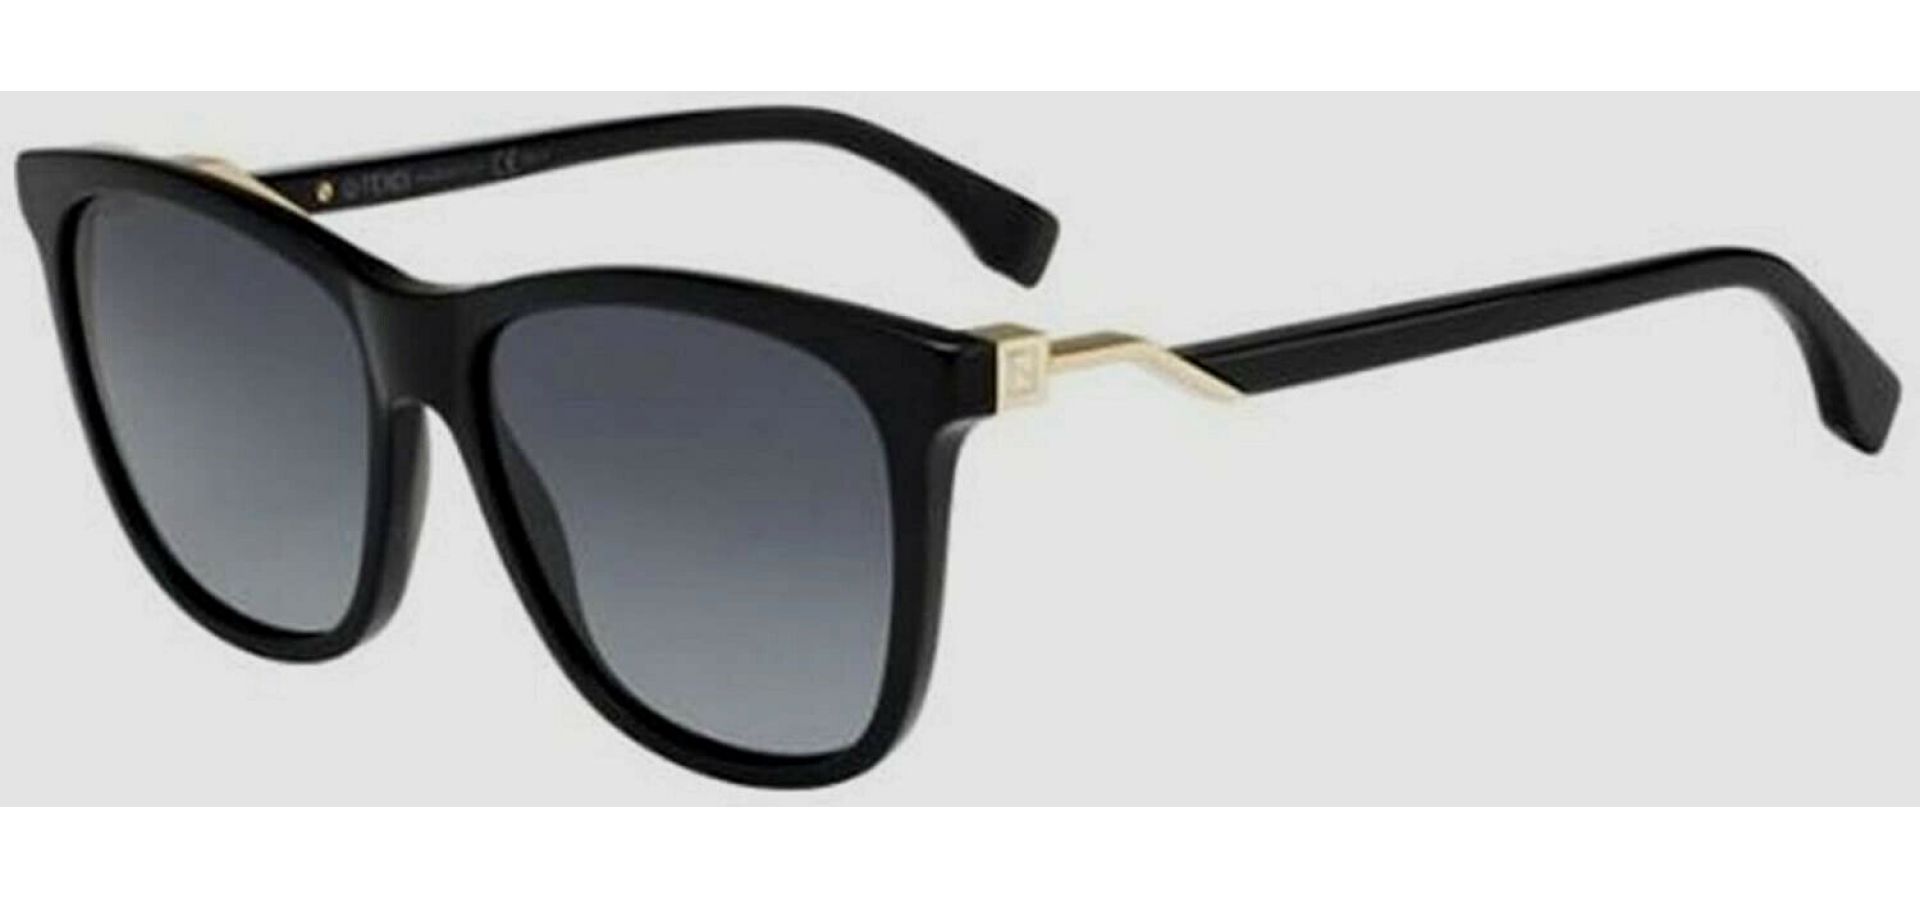 Sunčane naočale Fendi FENDI 0199: Boja: BLACK, Veličina: 48-19-140, Spol: ženske, Materijal: acetat